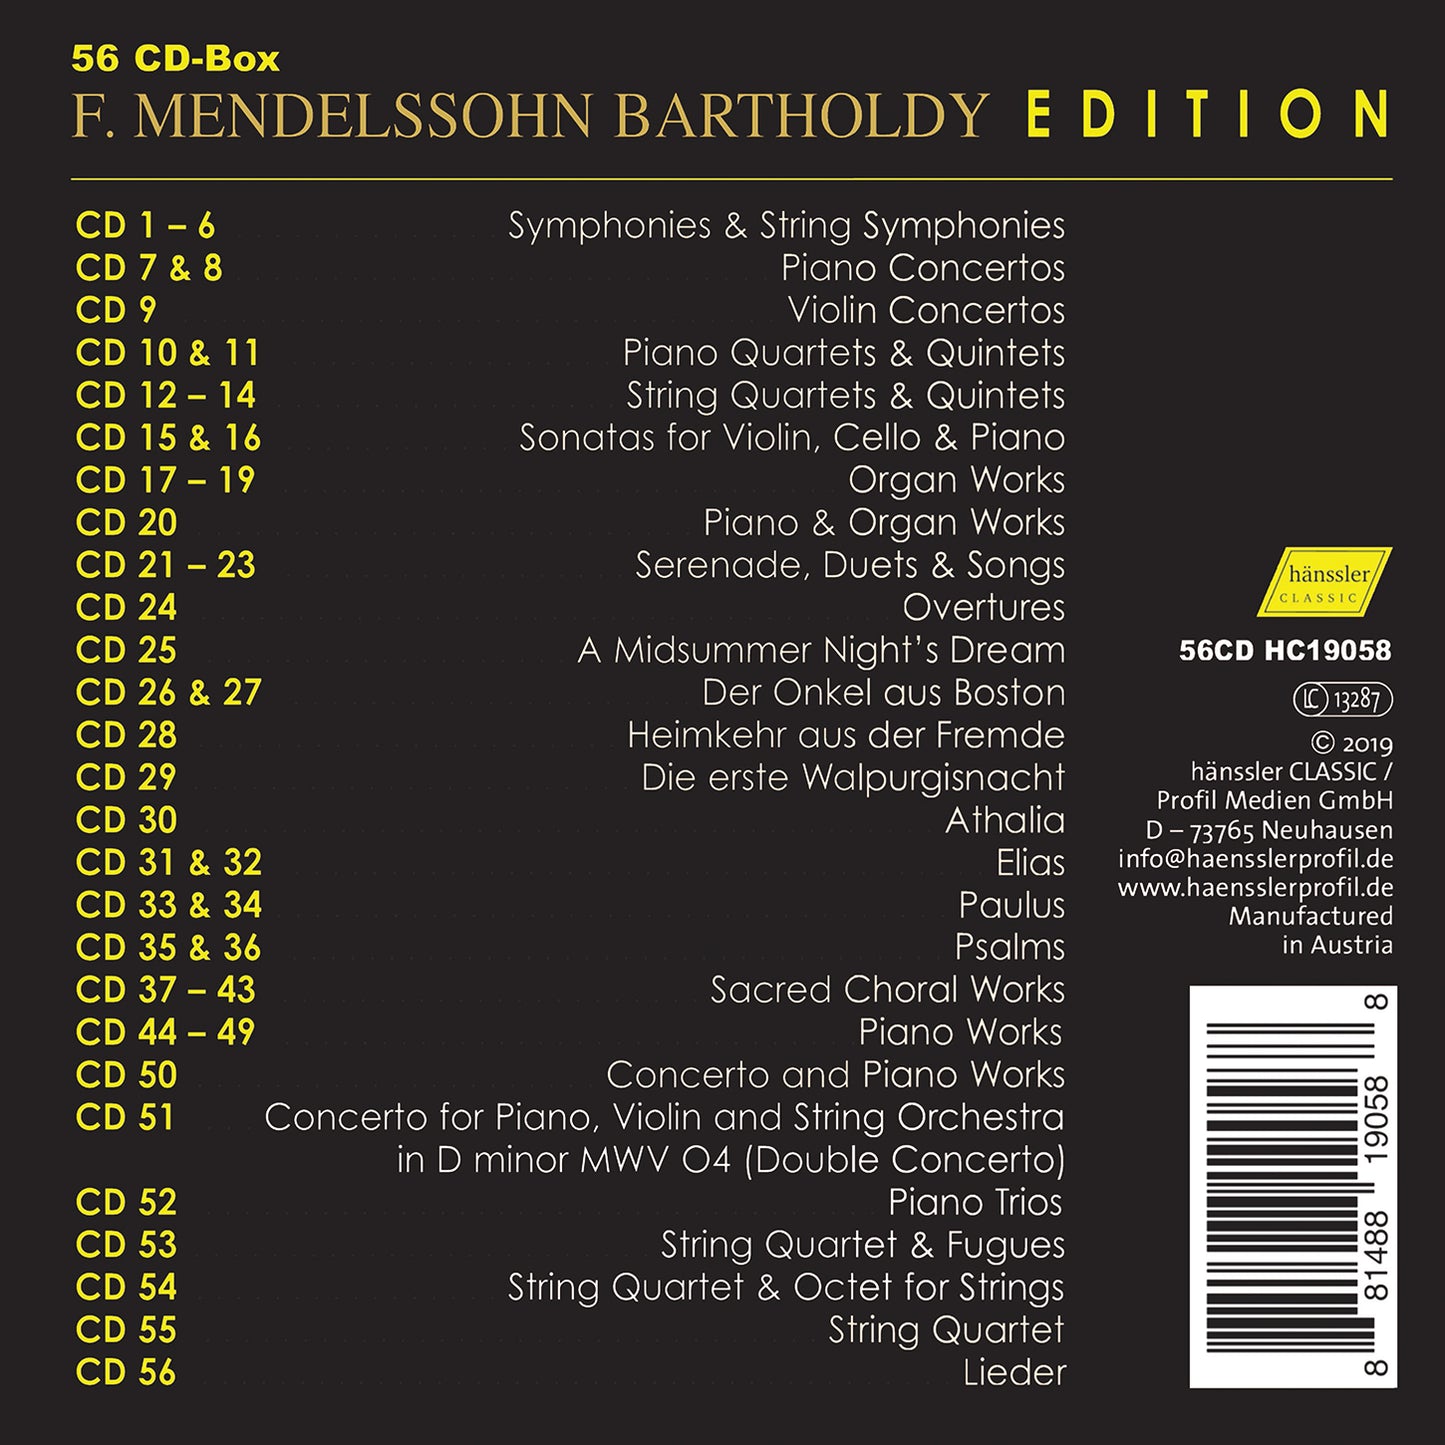 Mendelssohn Bartholdy Edition